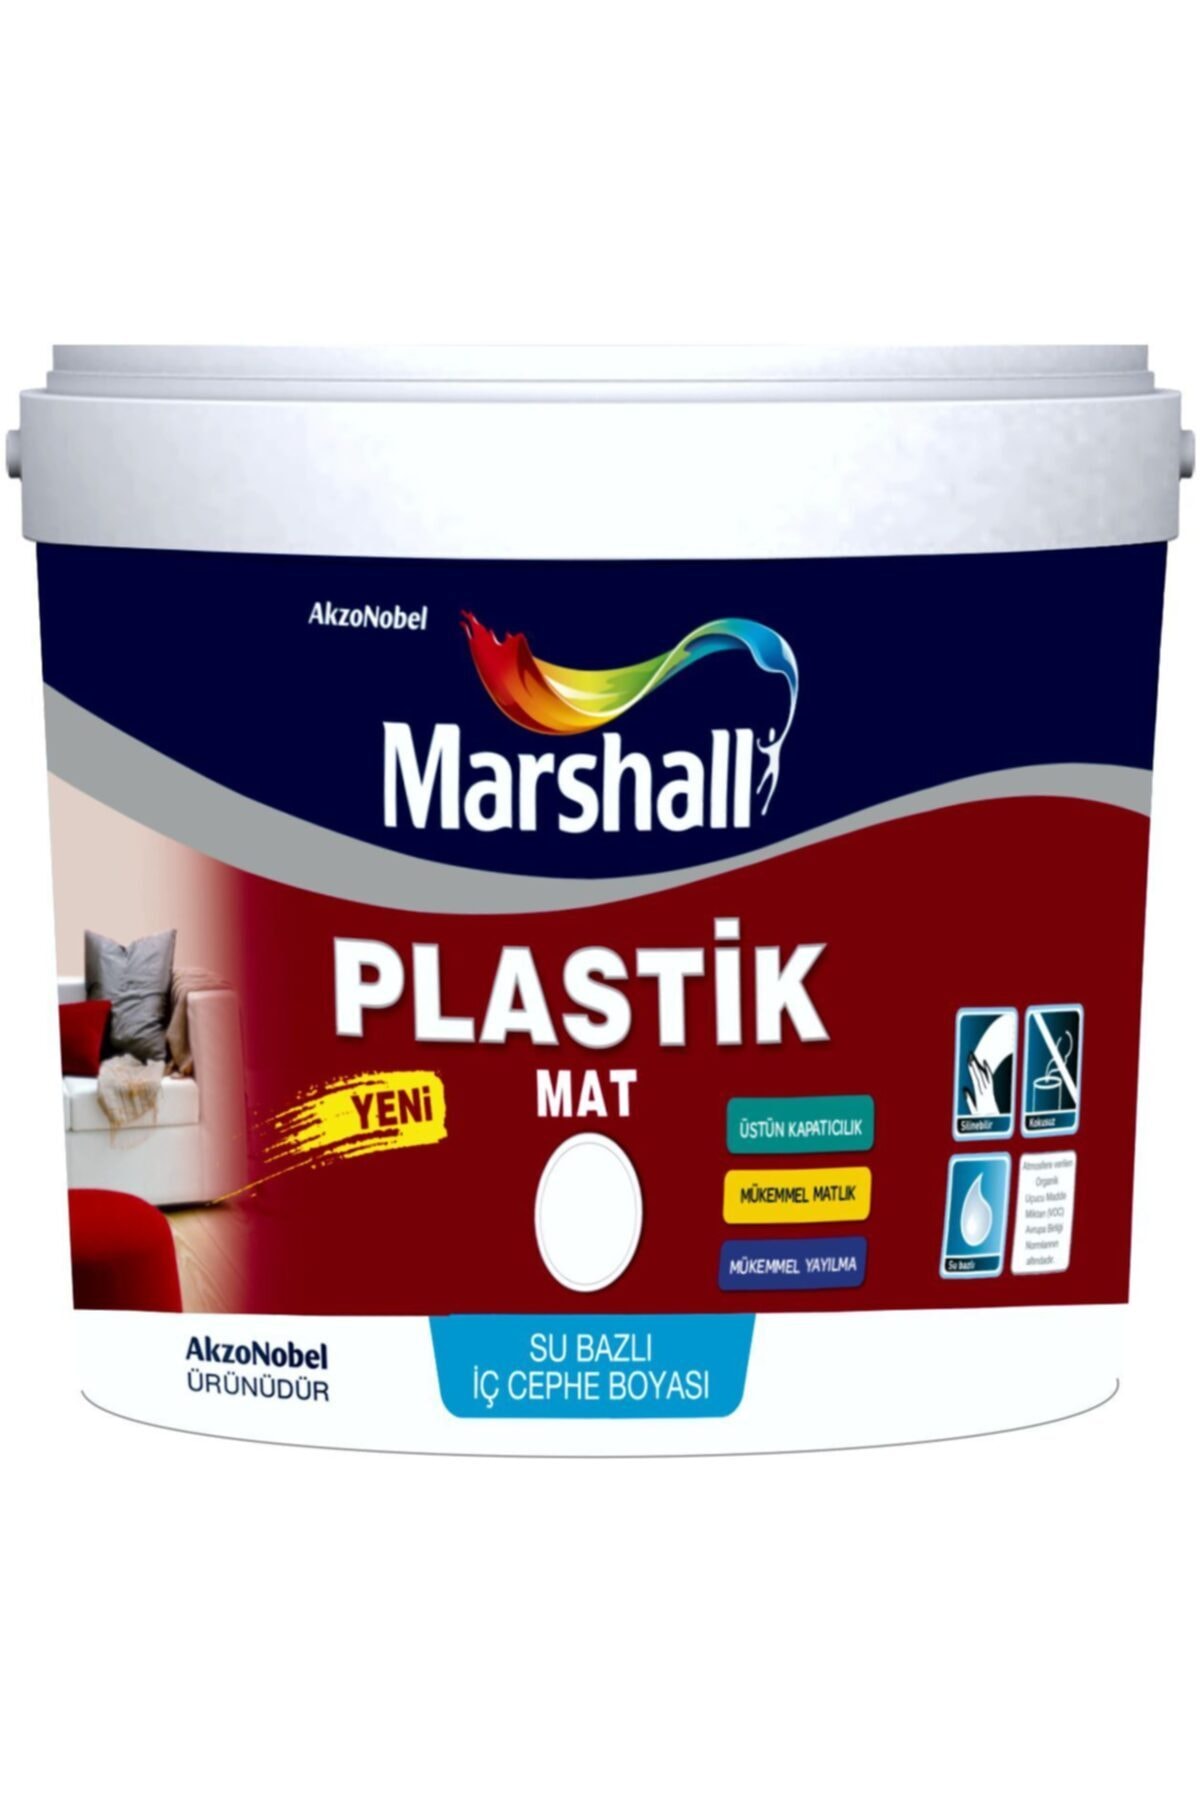 Marshall Plastik Mat Silinebilir Iç Cephe Boyası Beyaz 2,5 Lt (3,5 KG)